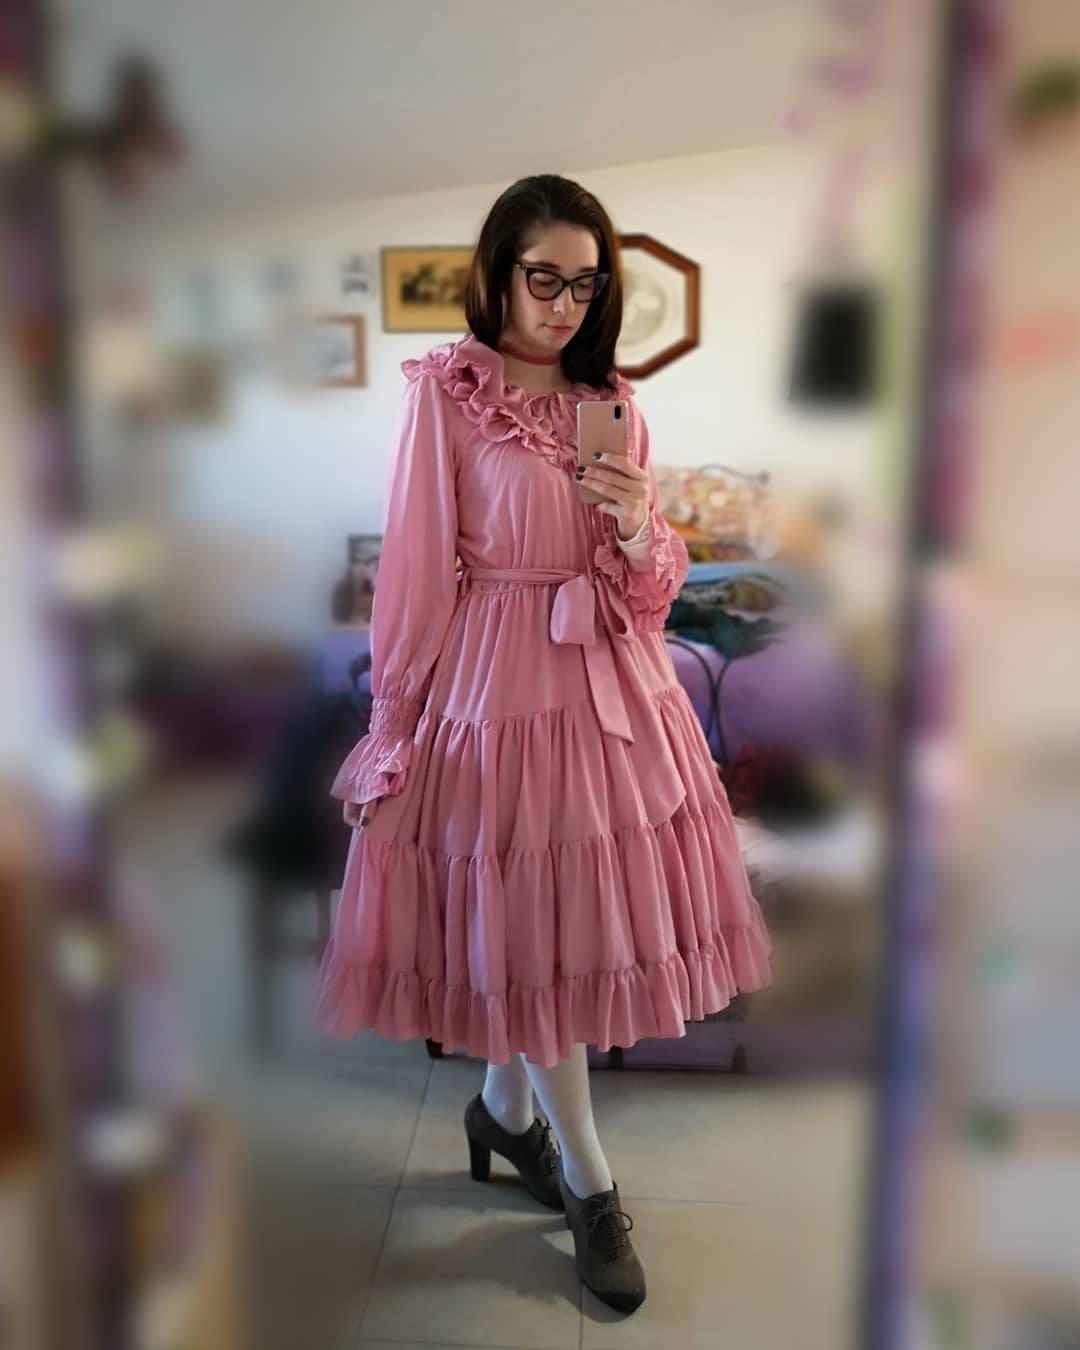 my lolita dress